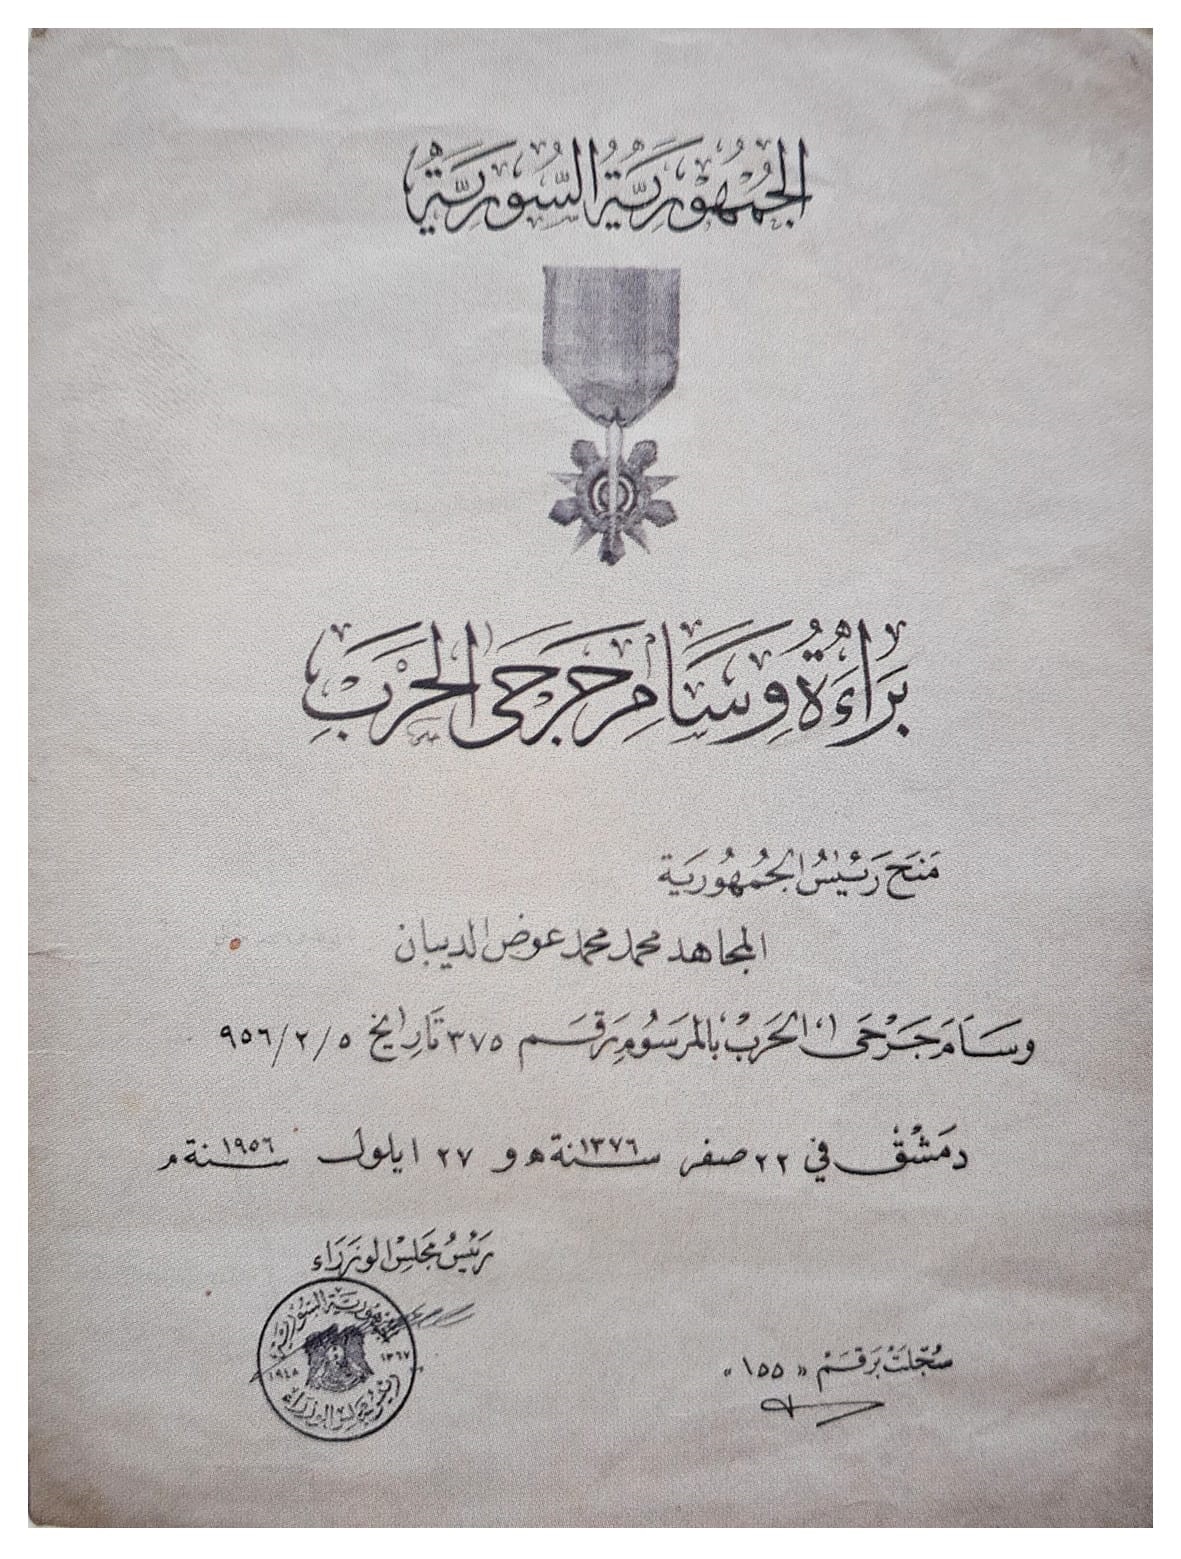 التاريخ السوري المعاصر - براءة وسام جرحى الحرب الذي منح للمجاهد محمد محمد عوض الديبان عام 1956